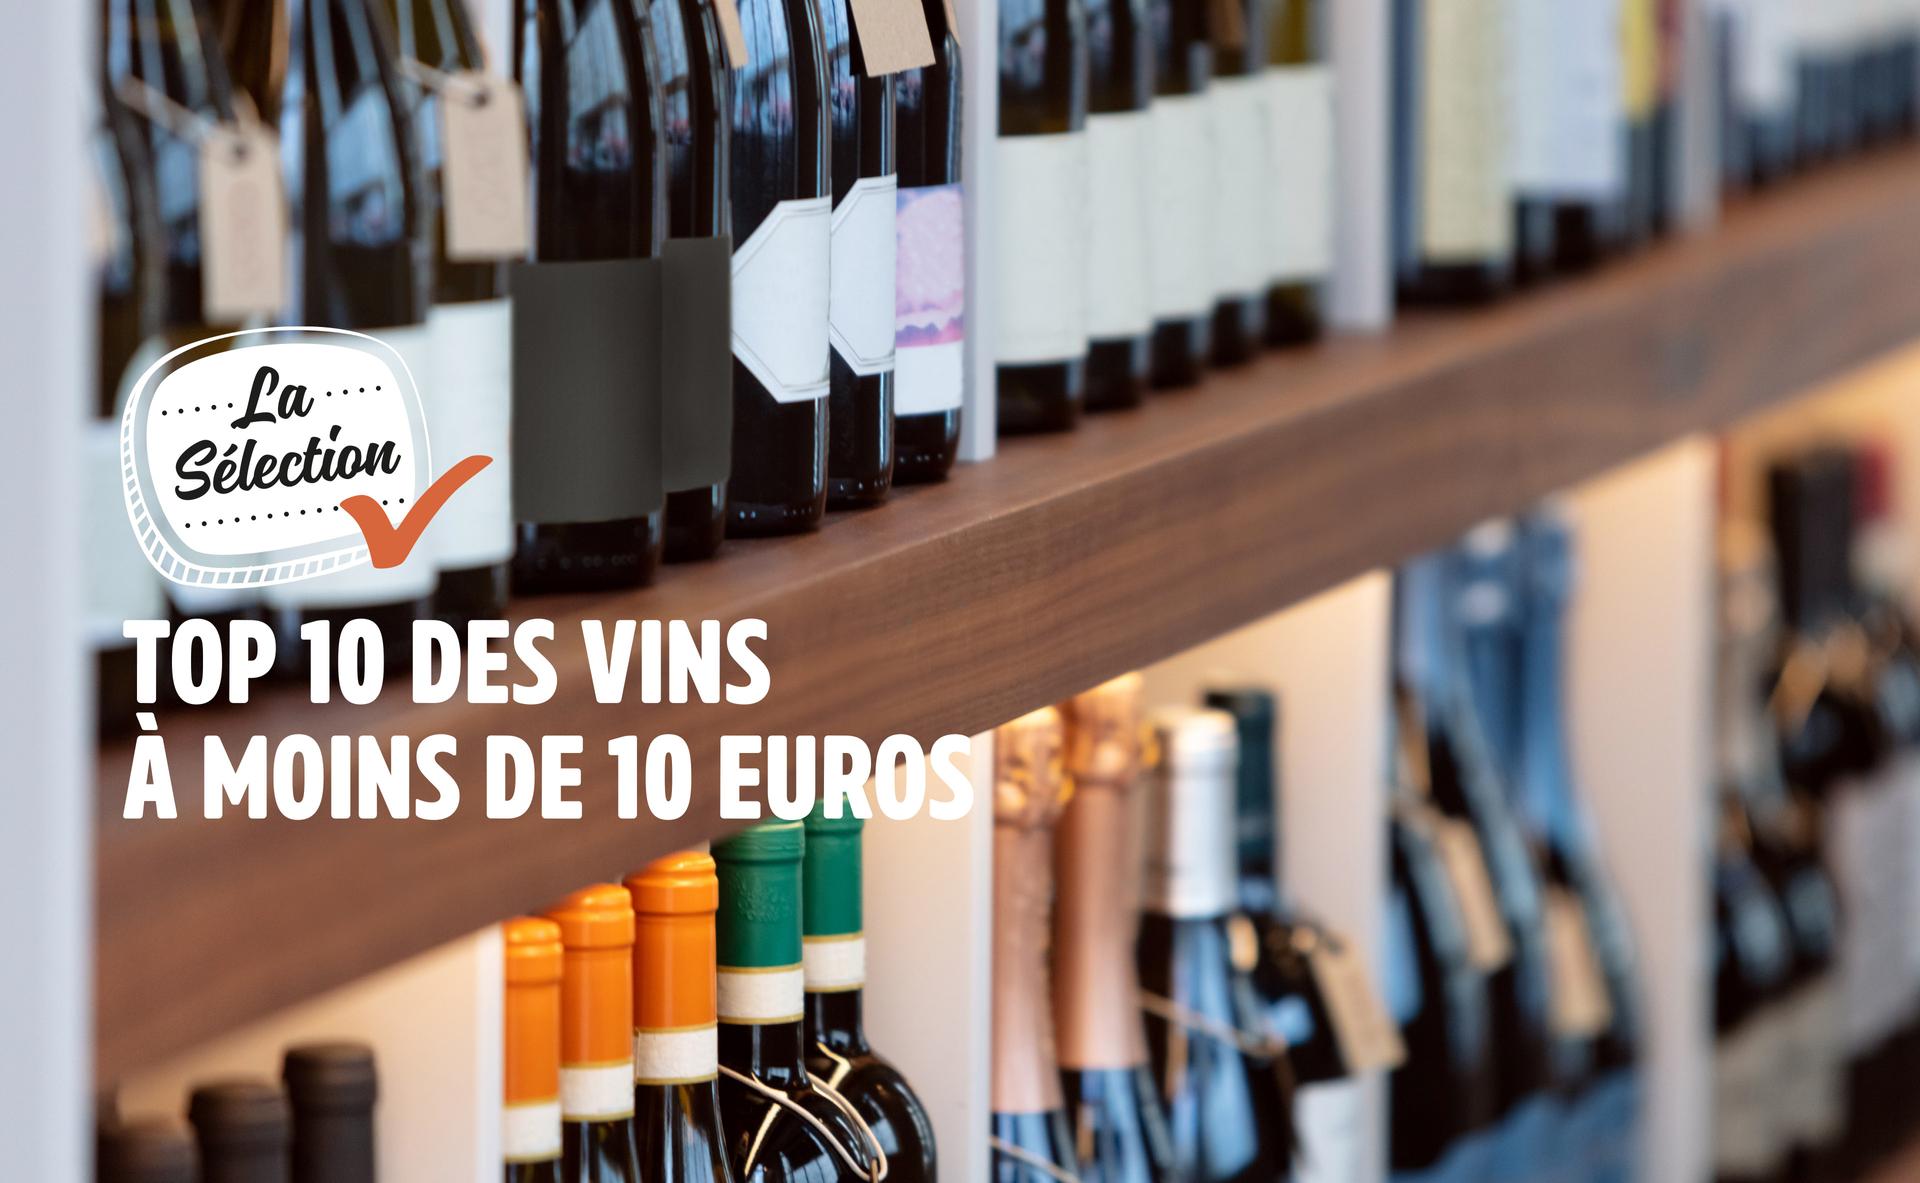 Top 10 des vins à moins de 10 euros